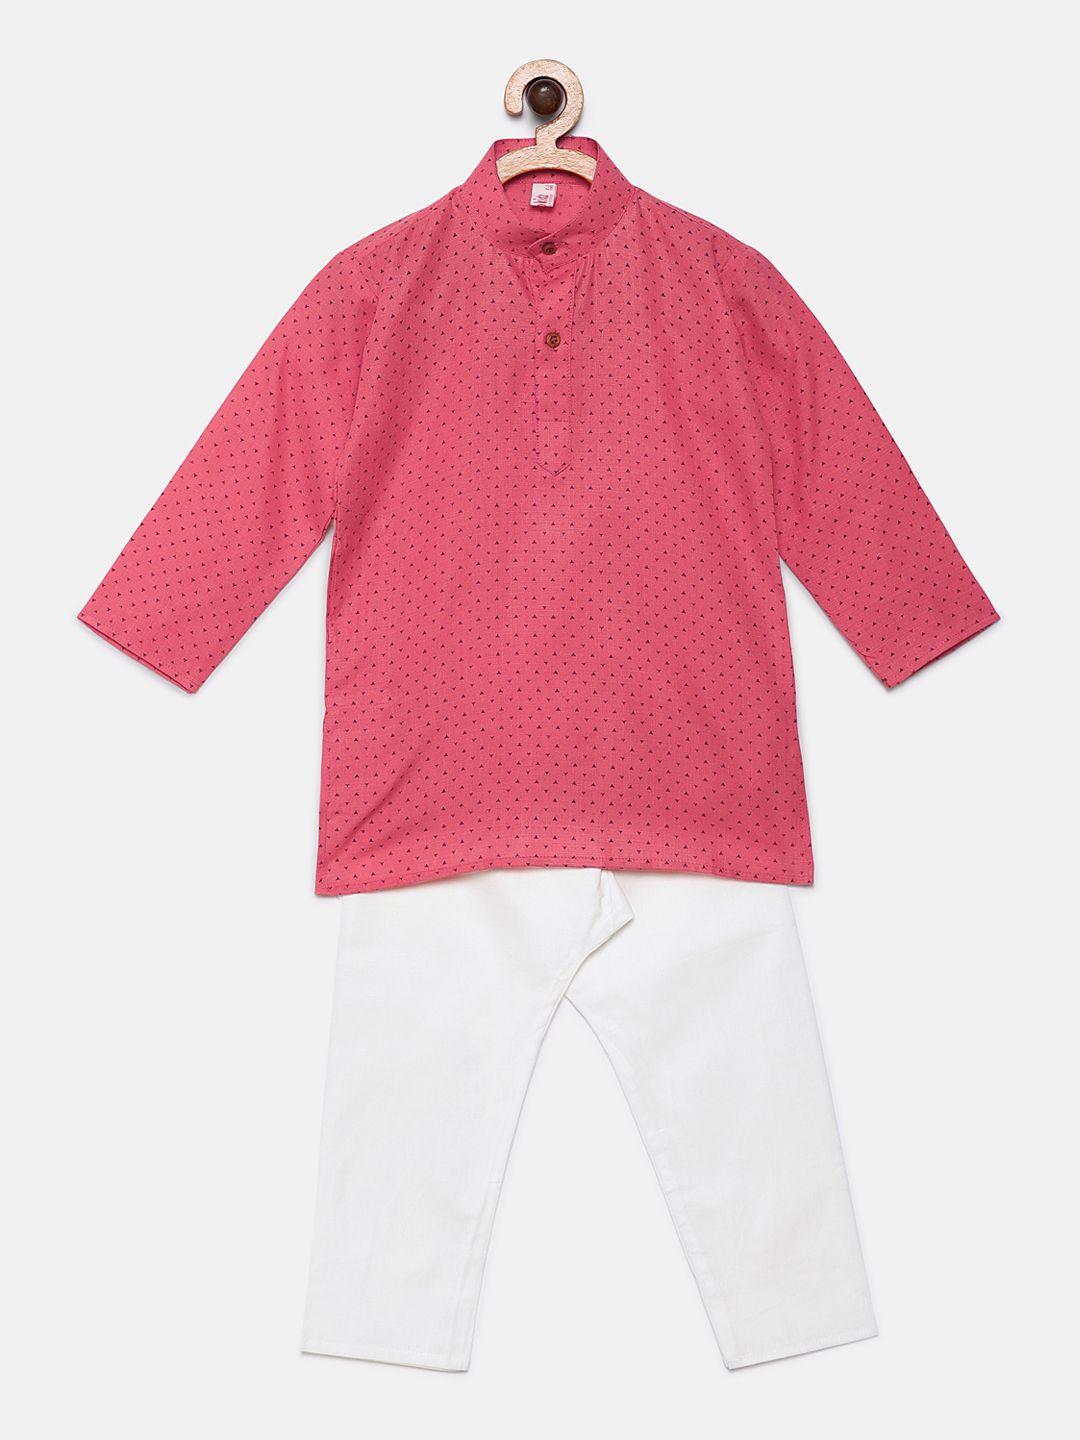 ridokidz boys pink & white printed kurta with pyjamas